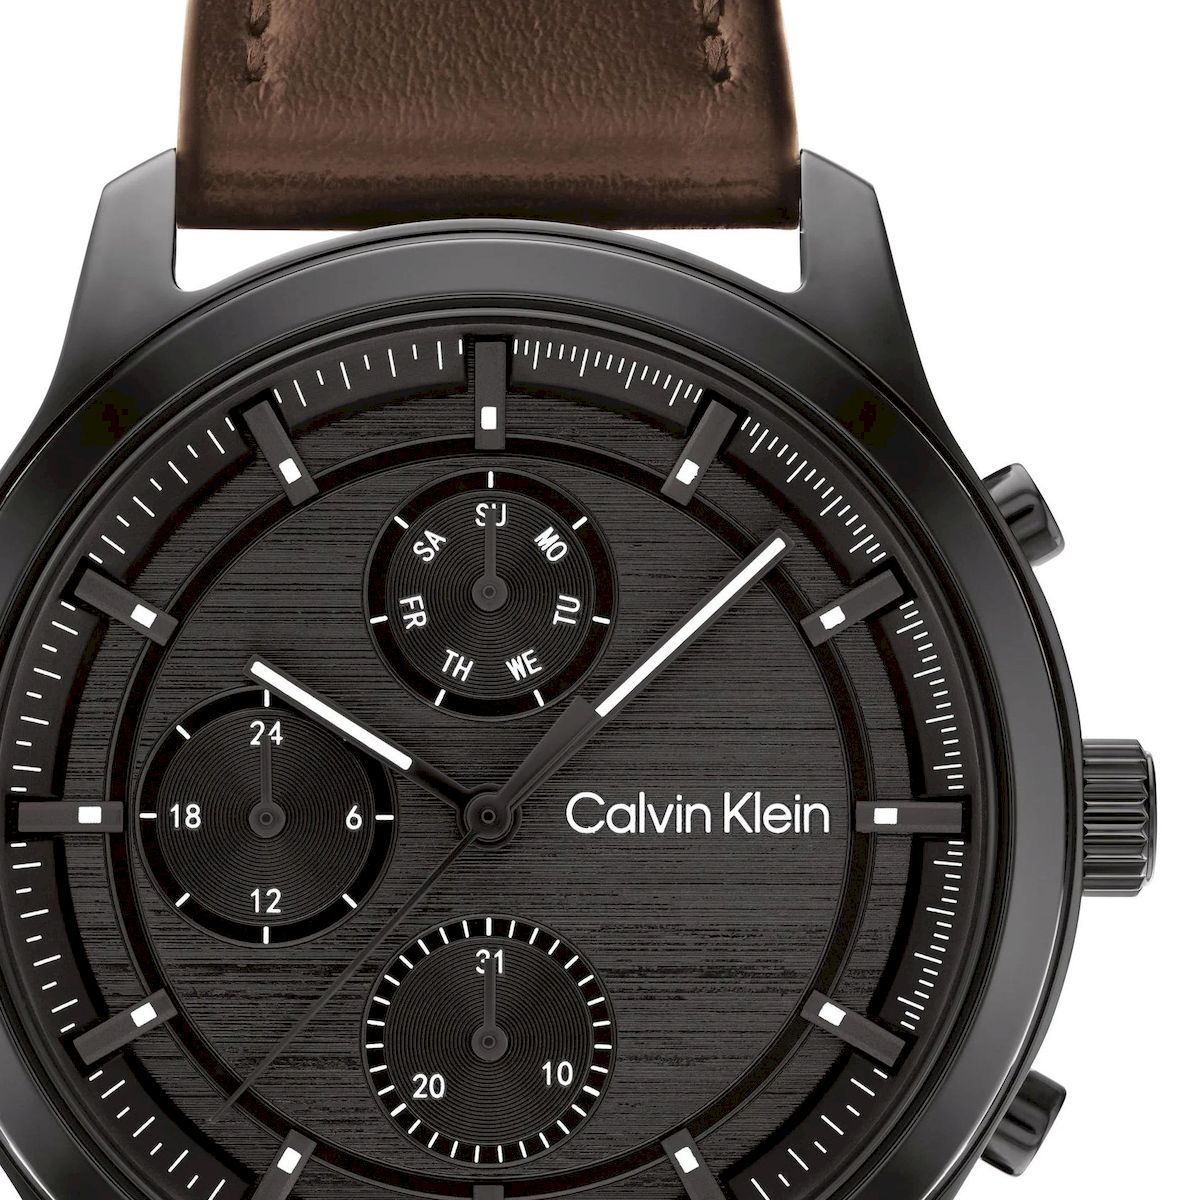 Zegarek męski Calvin Klein Sport Multi-Function z brązowym paskiem 25200212  - 833,00 zł